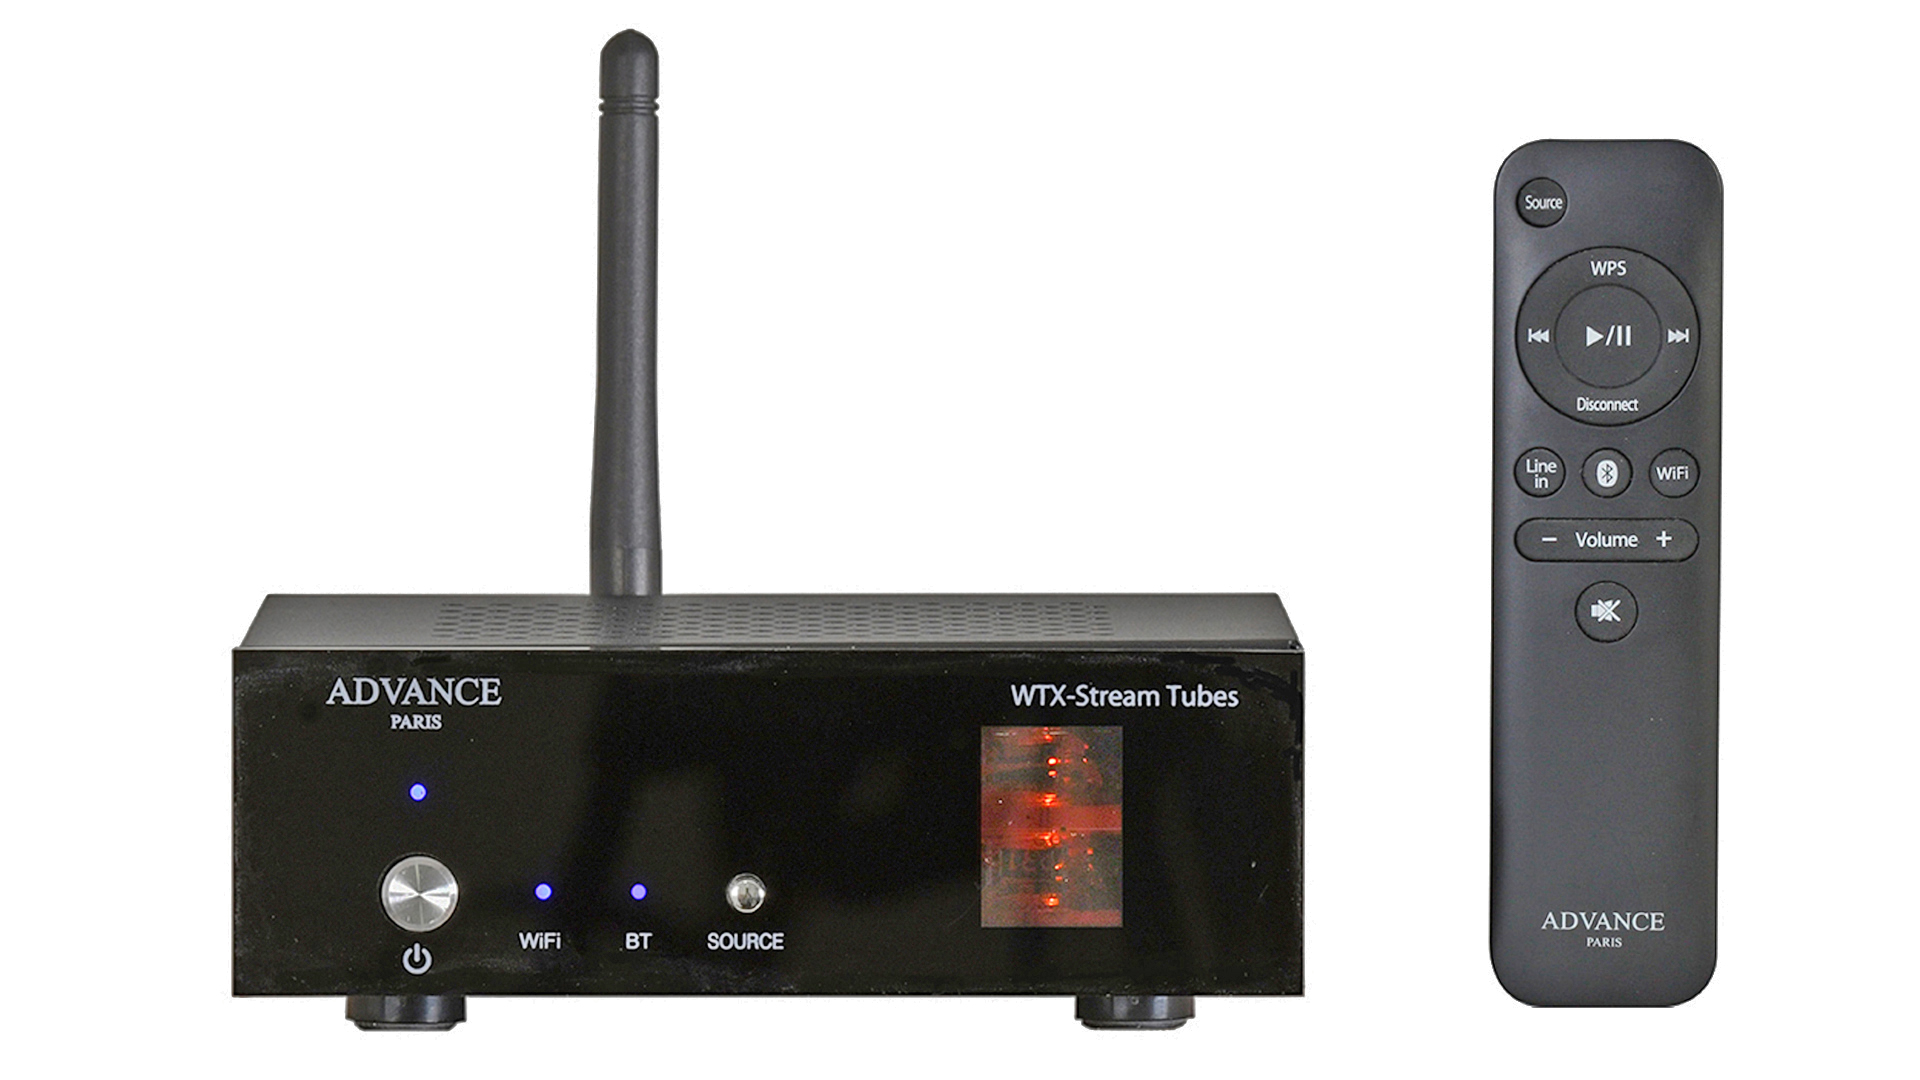 WTX-StreamTubes from Advance Paris (Image Credit: Advance Paris)